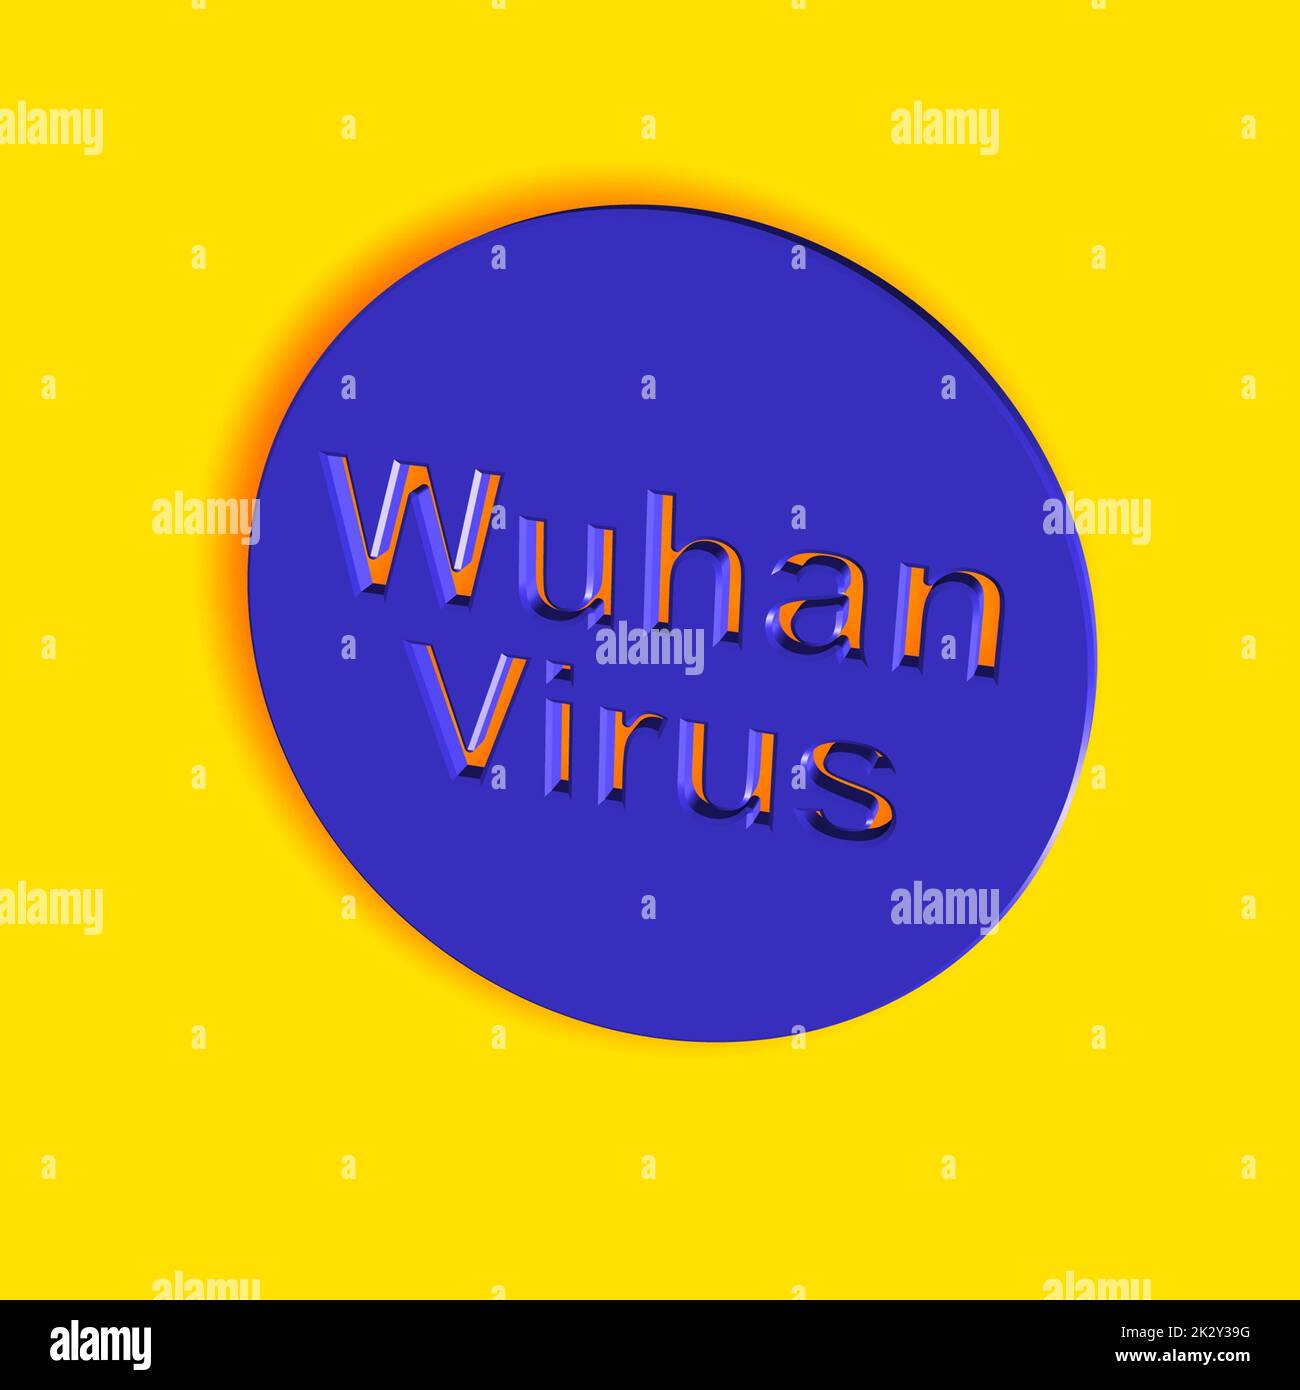 'Wuhanvirus' = 'Wuhan virus' - parola, lettere o testo come illustrazione 3D, rendering 3D, computer grafica Foto Stock